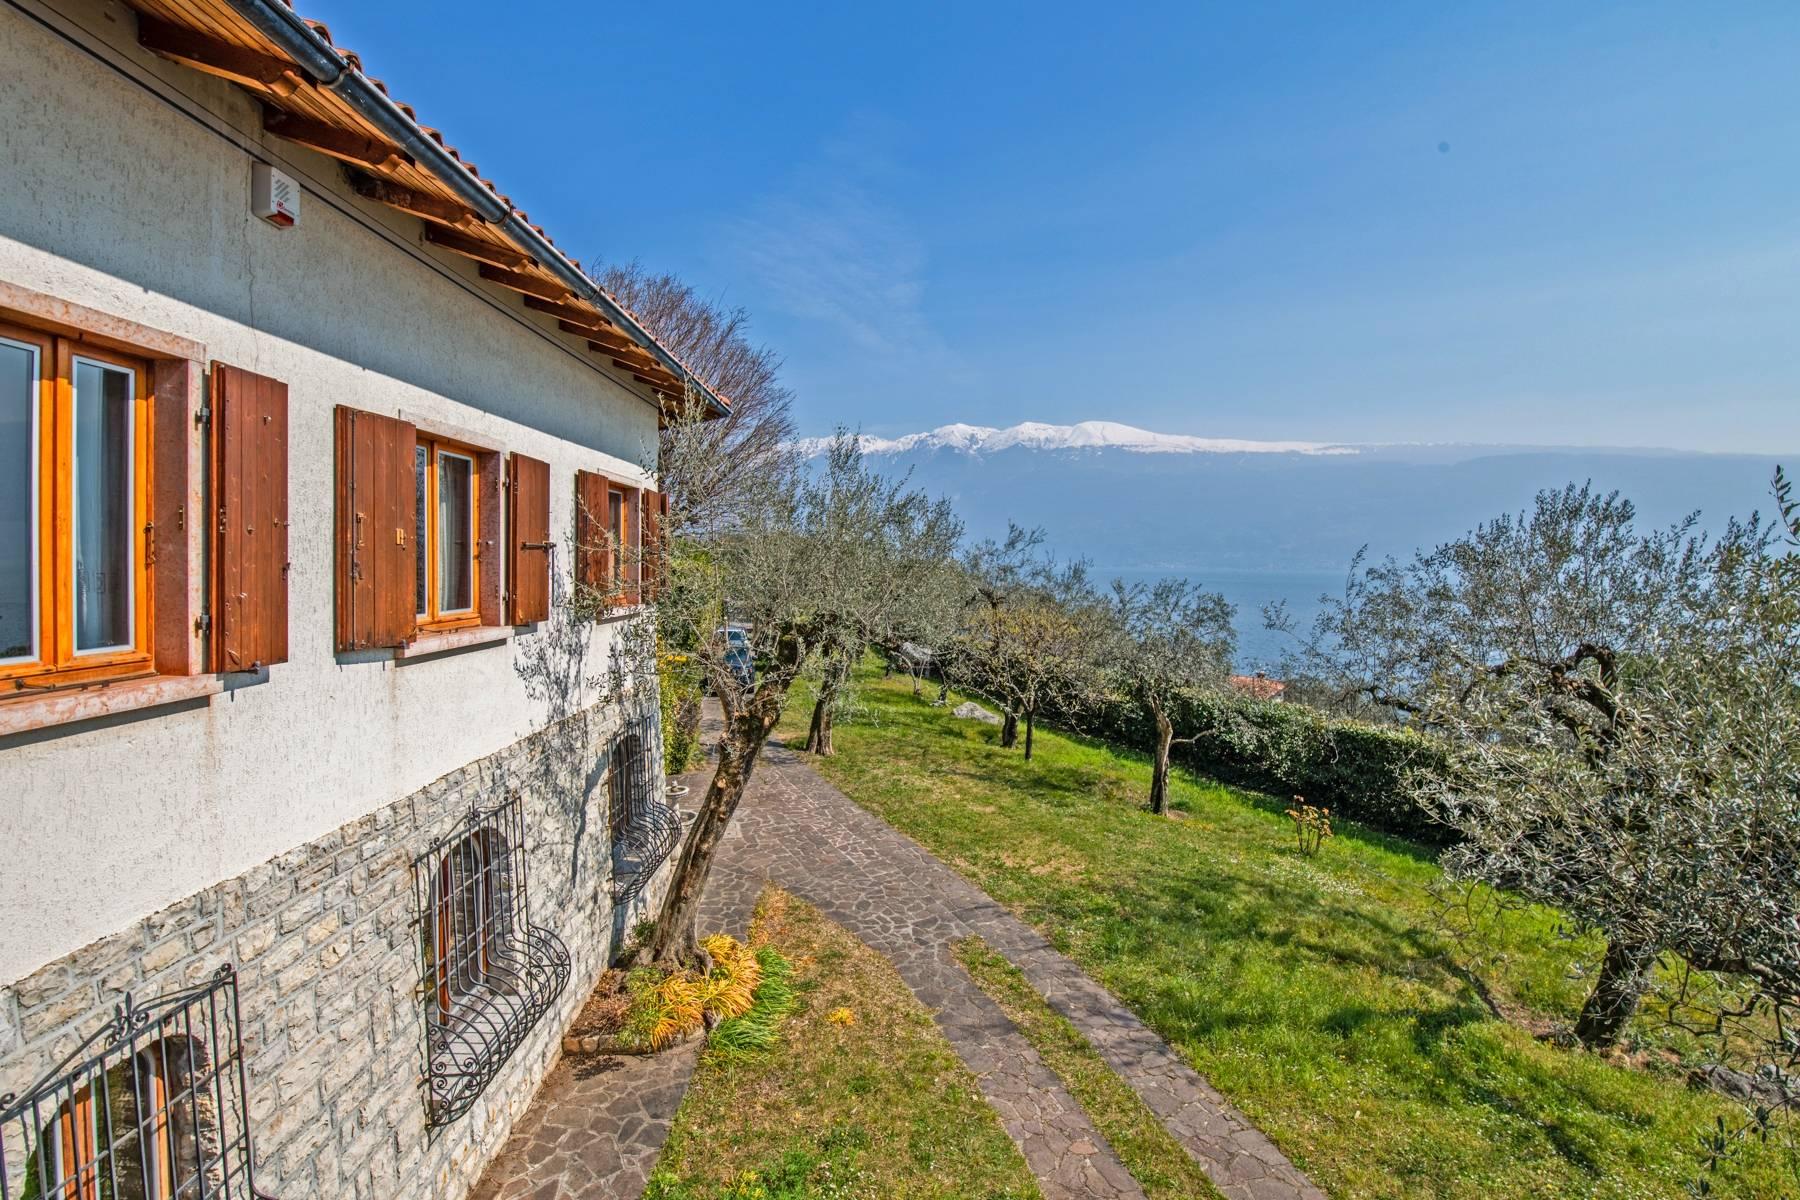 Villa in Gargnano inmitten der Olivenbäume vom Gardasee mit herrlichem Seeblick - 4